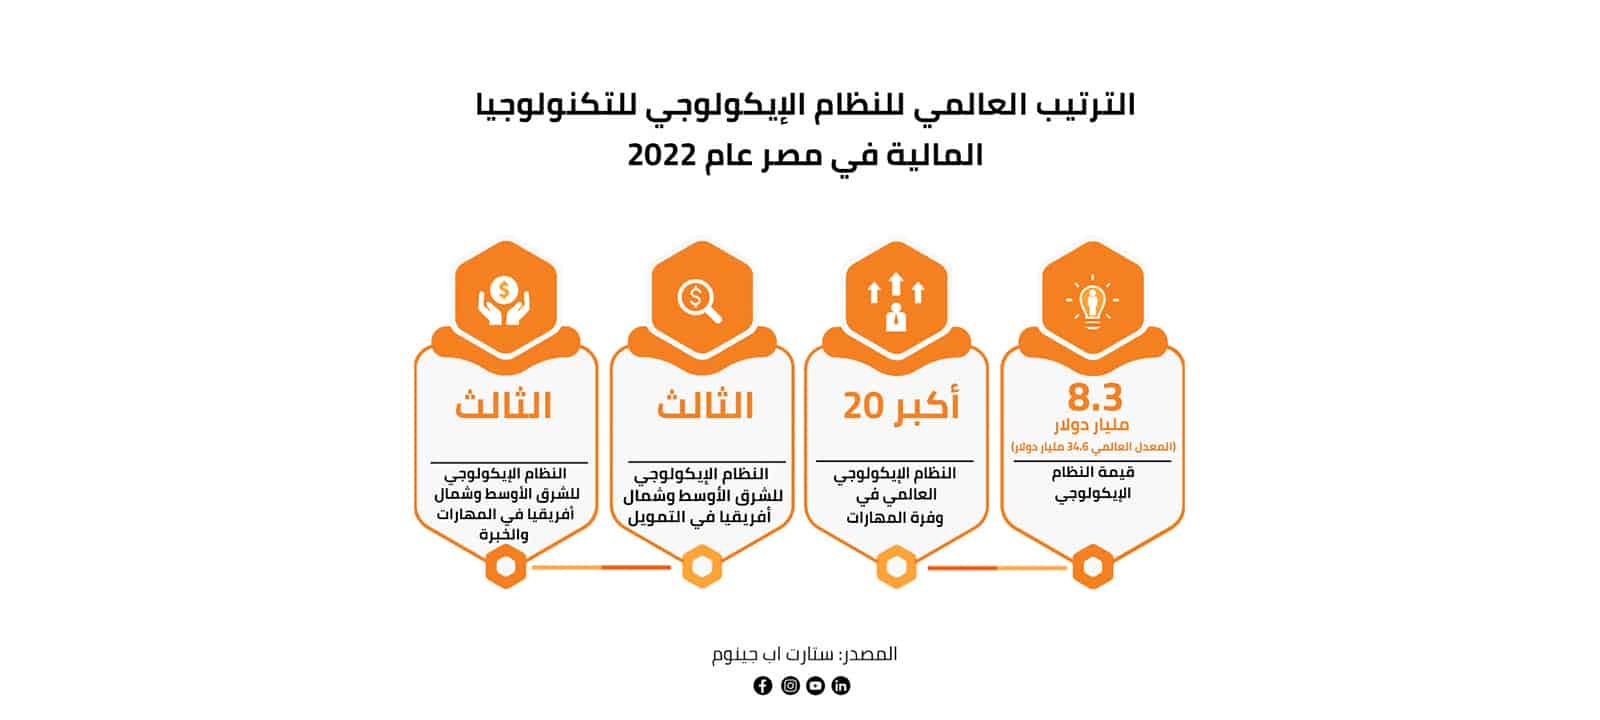 الوضع العالمي للنظام الإيكولوجي للتكنولوجيا المالية في مصر عام 2022 